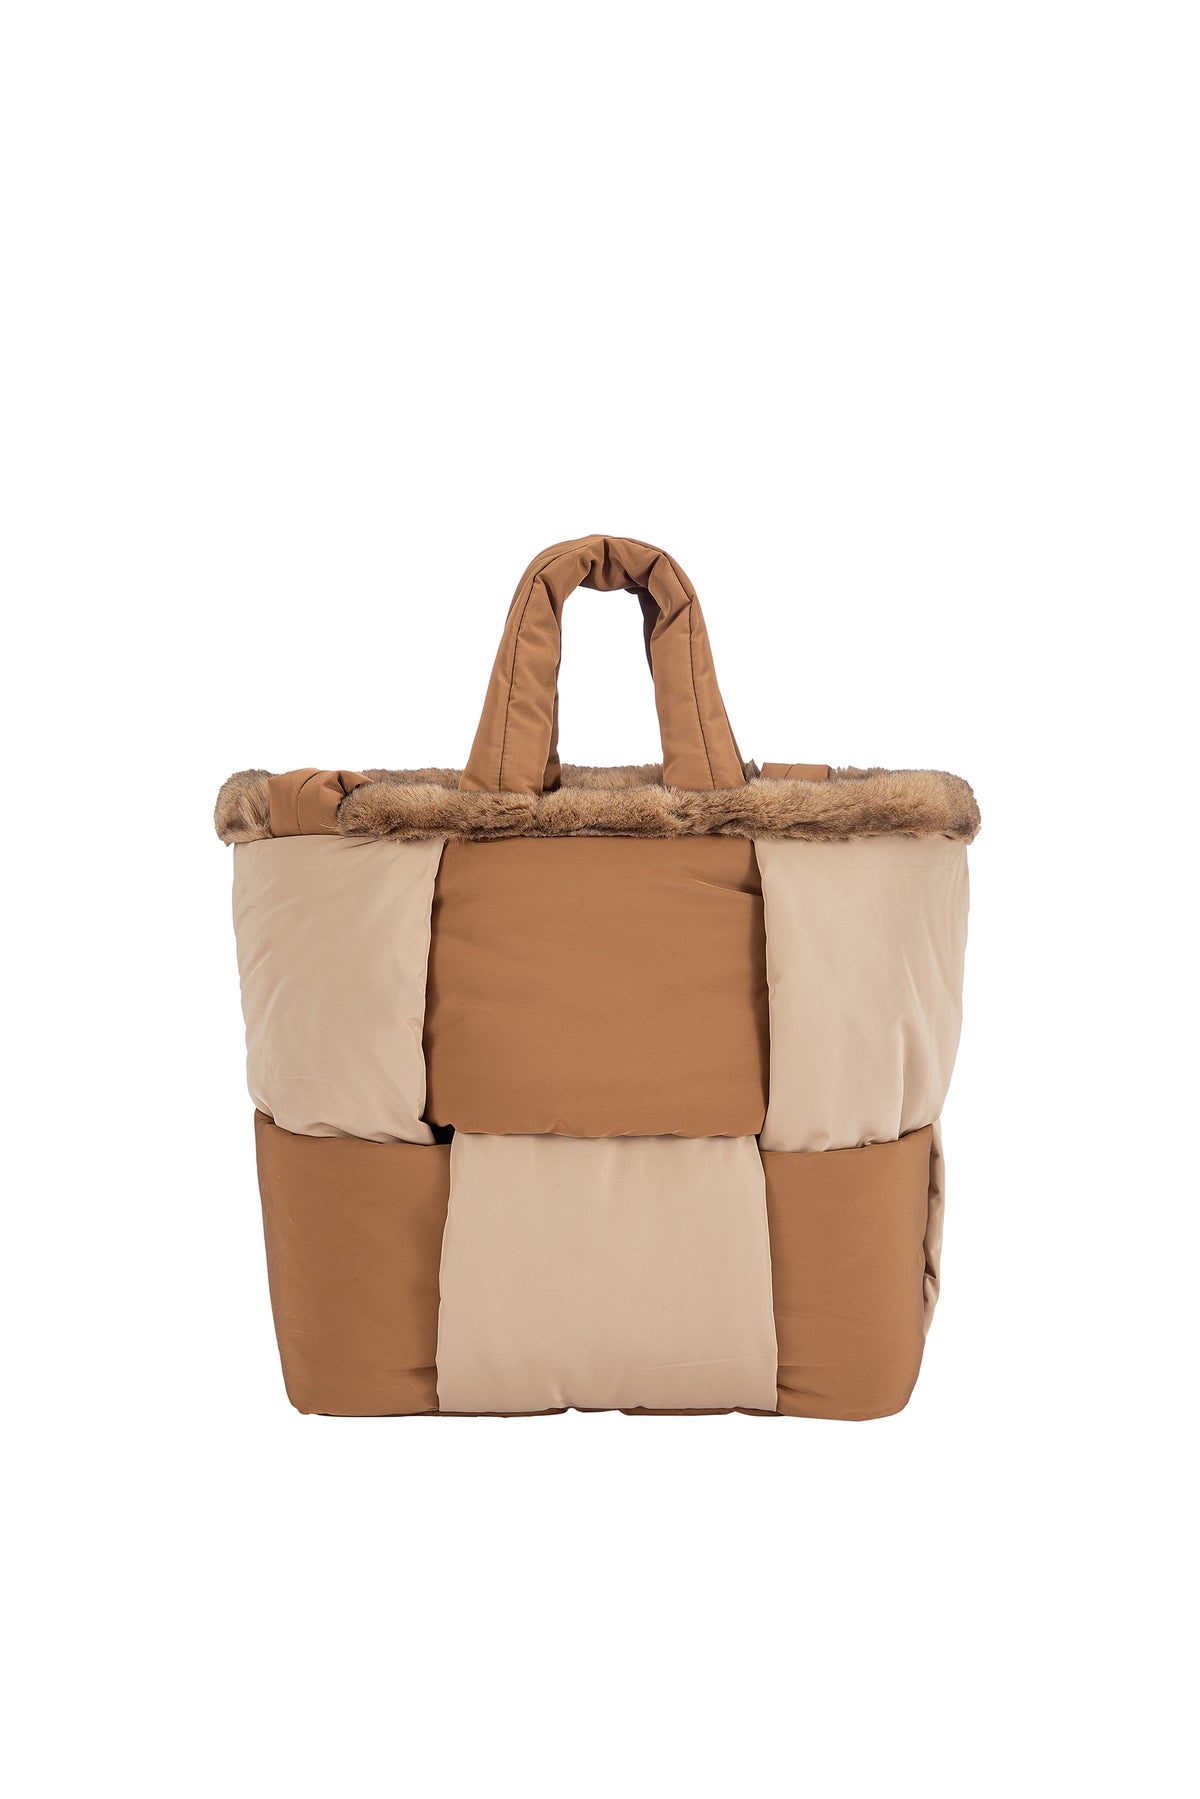 Reversible Tote Bag in Sand/Brown